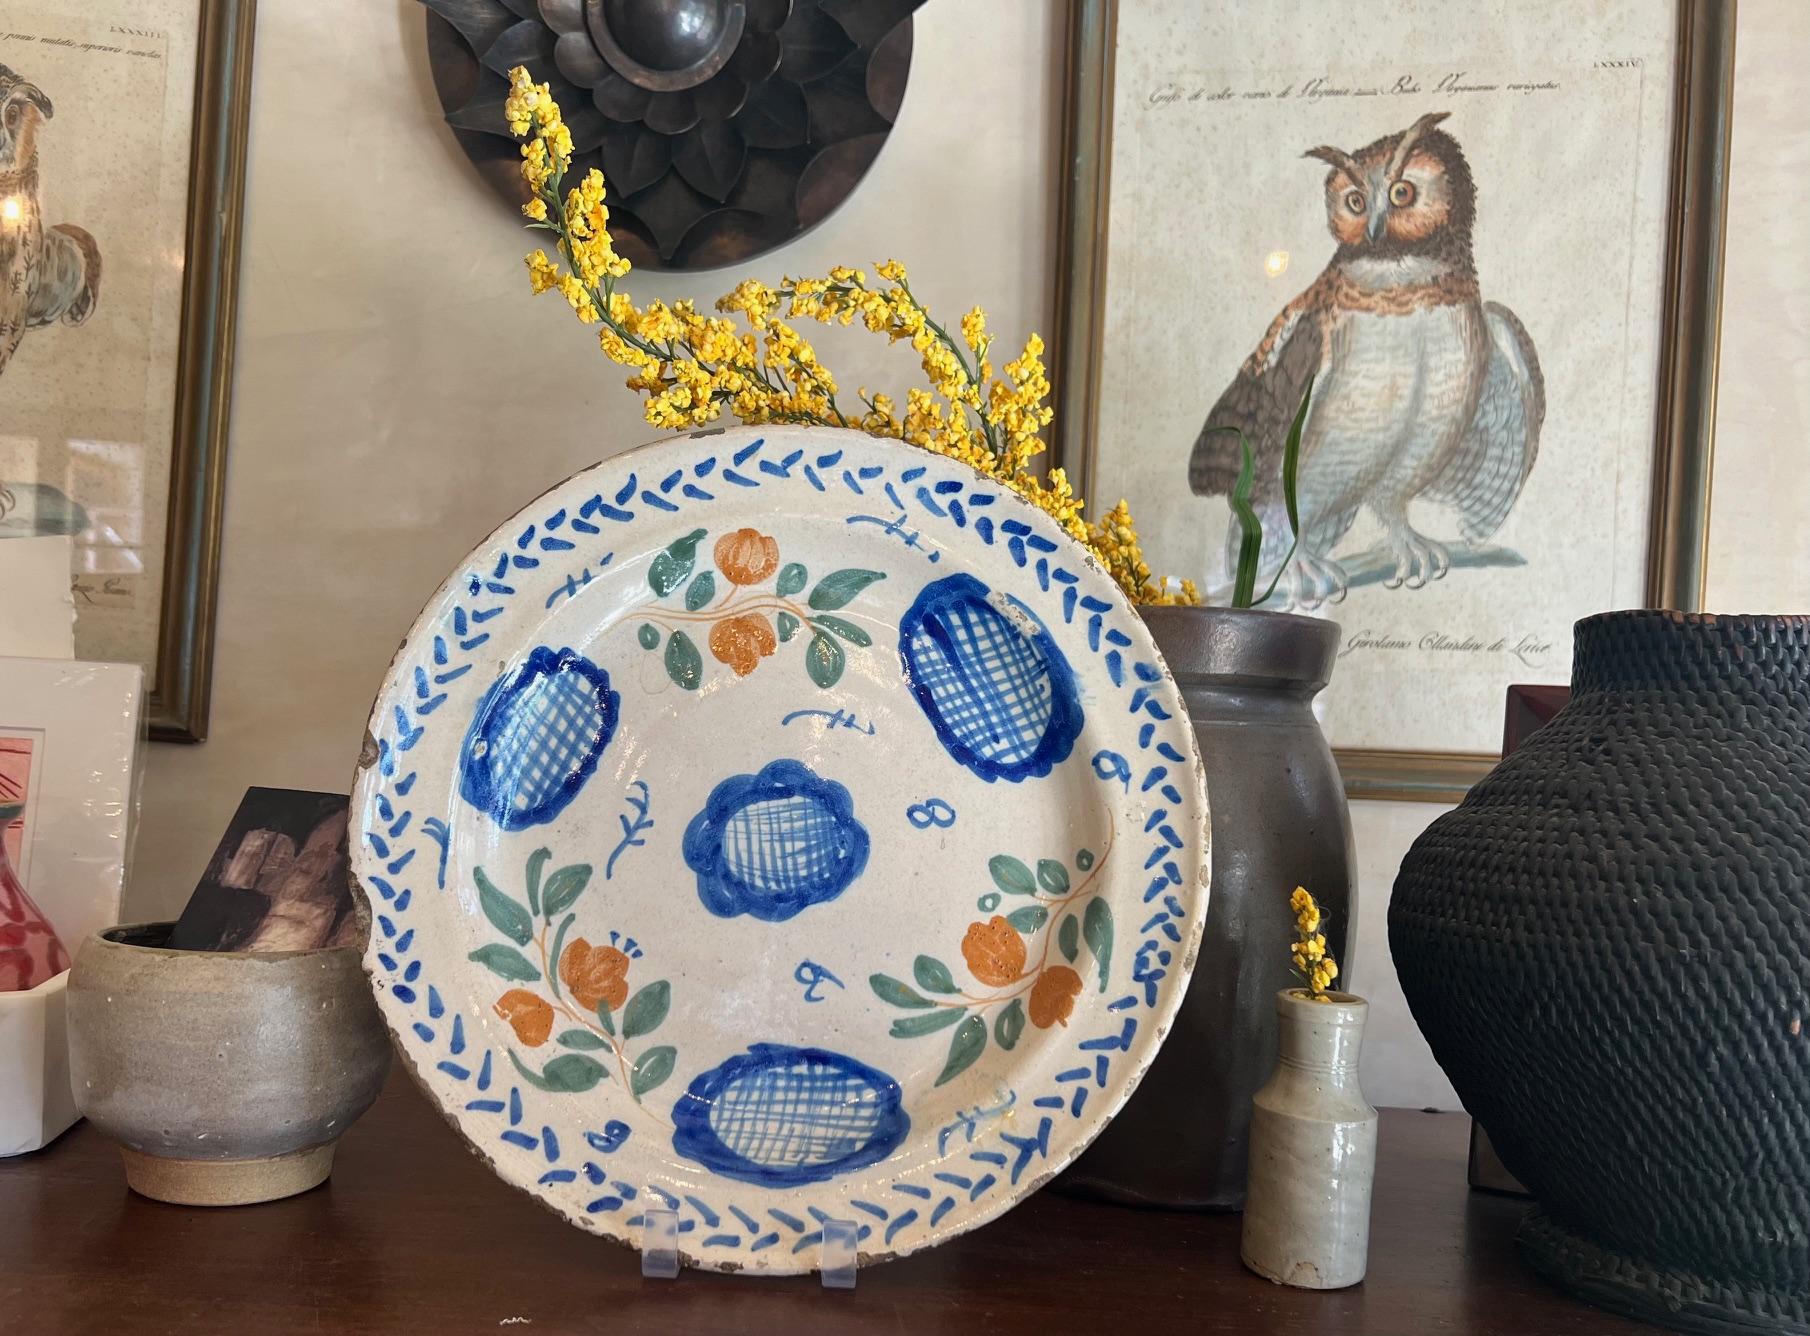 Chargeur / assiette / plat européen simplement peint du 18e siècle, probablement espagnol. L'assiette en fer-blanc, peinte à la main, est décorée de fleurs bleues et orange entourées de feuilles vertes et de touches bleues.

Je vais inclure un